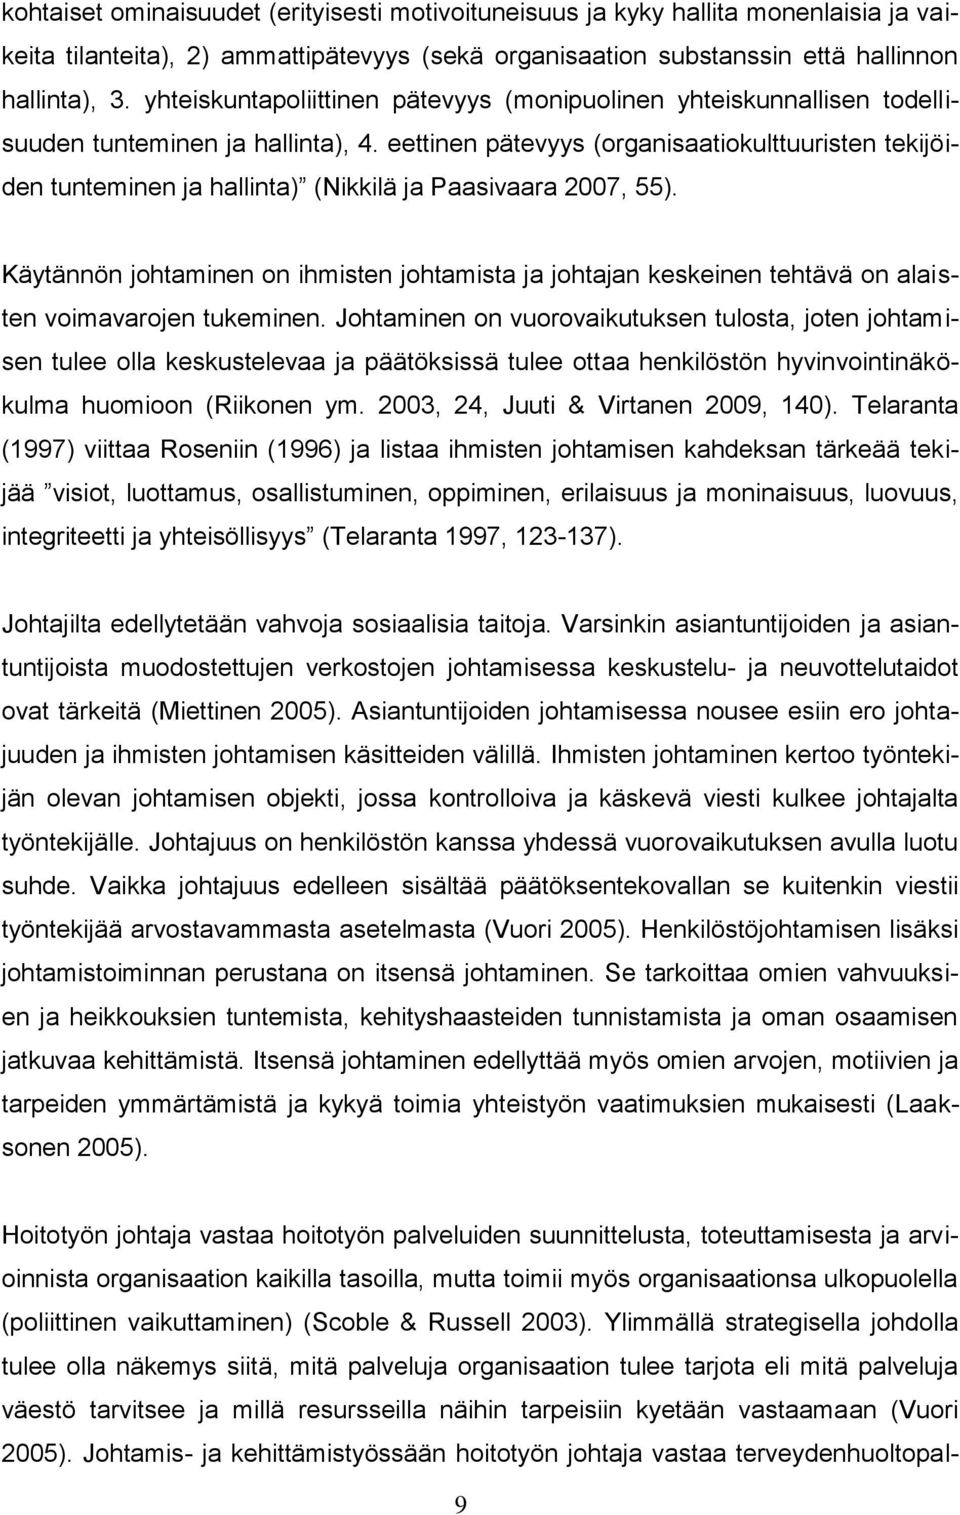 eettinen pätevyys (organisaatiokulttuuristen tekijöiden tunteminen ja hallinta) (Nikkilä ja Paasivaara 2007, 55).